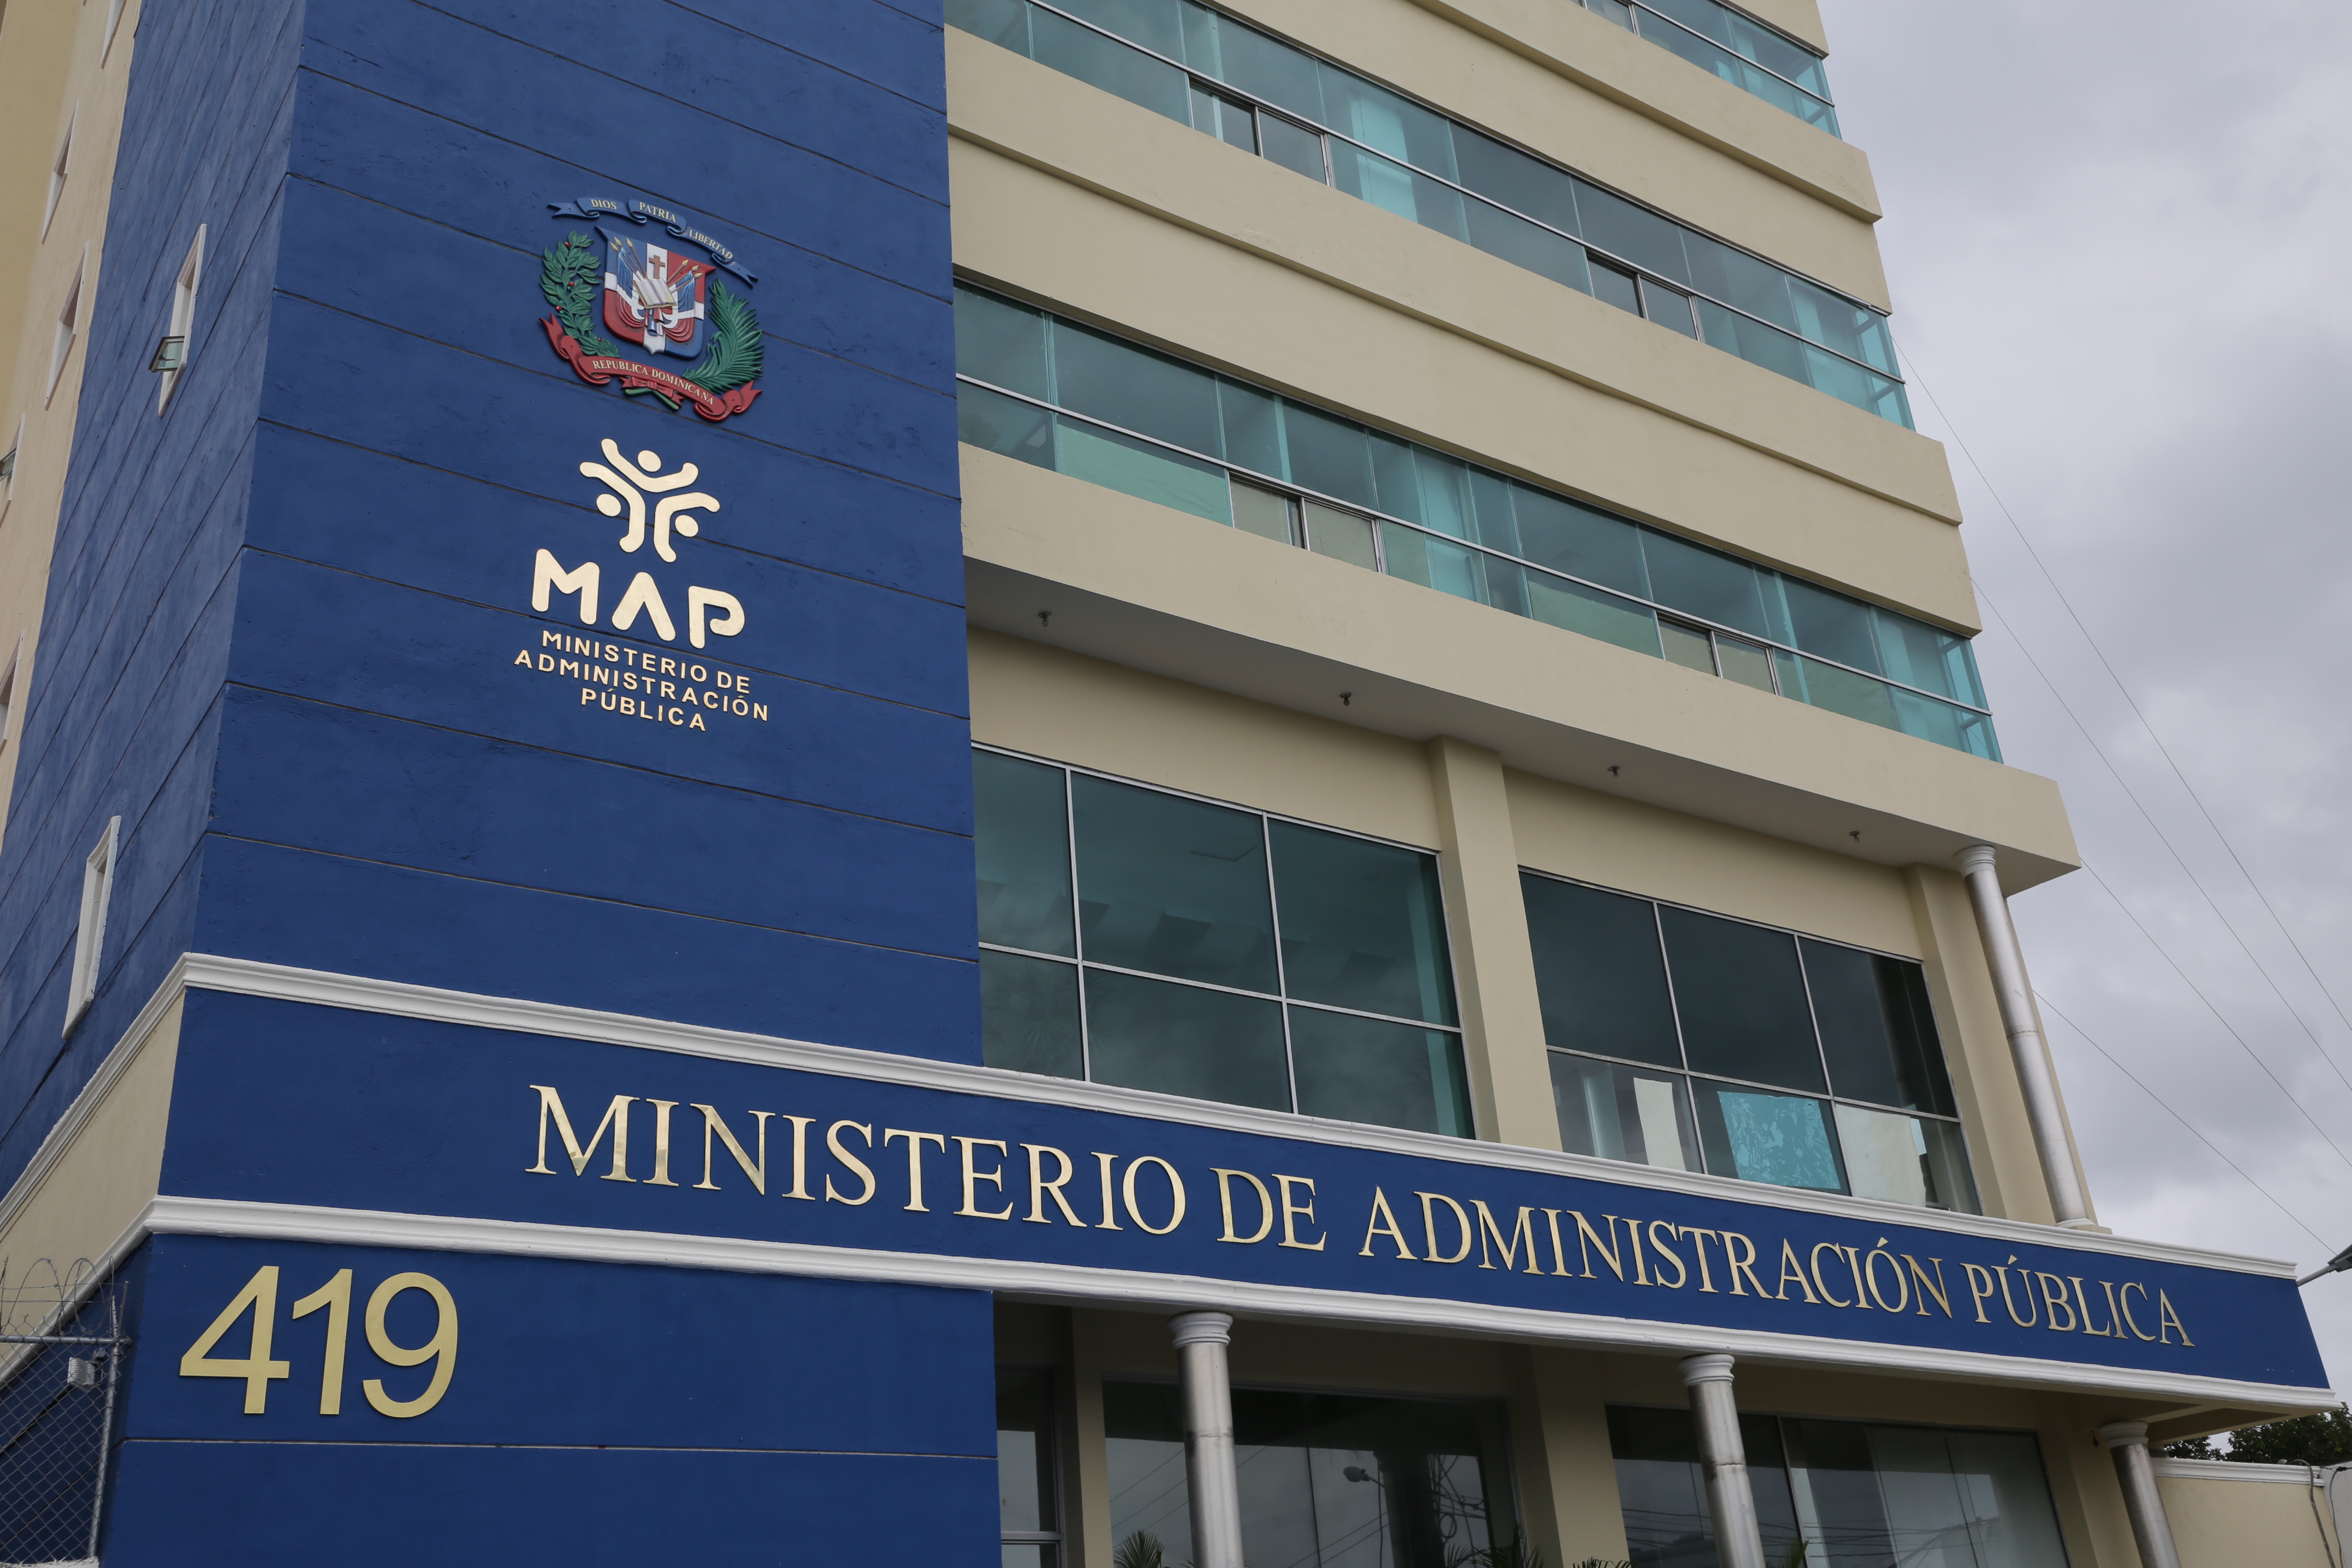 REPÚBLICA DOMINICANA: Ministerio de Administración Pública elaboró y promovió 15 propuestas normativas al Poder Ejecutivo en 2022